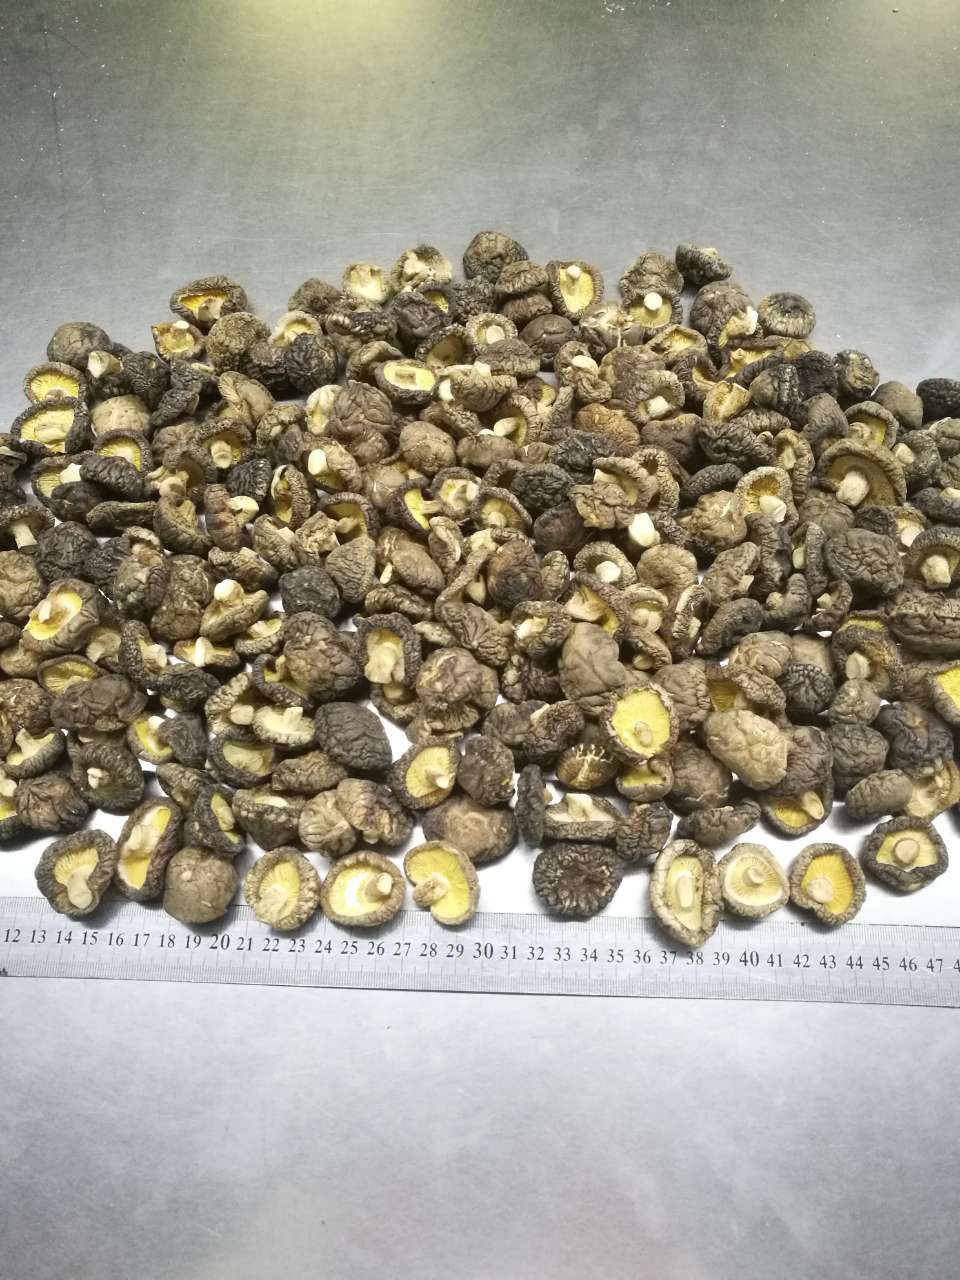 dried mushroom 2-3cm